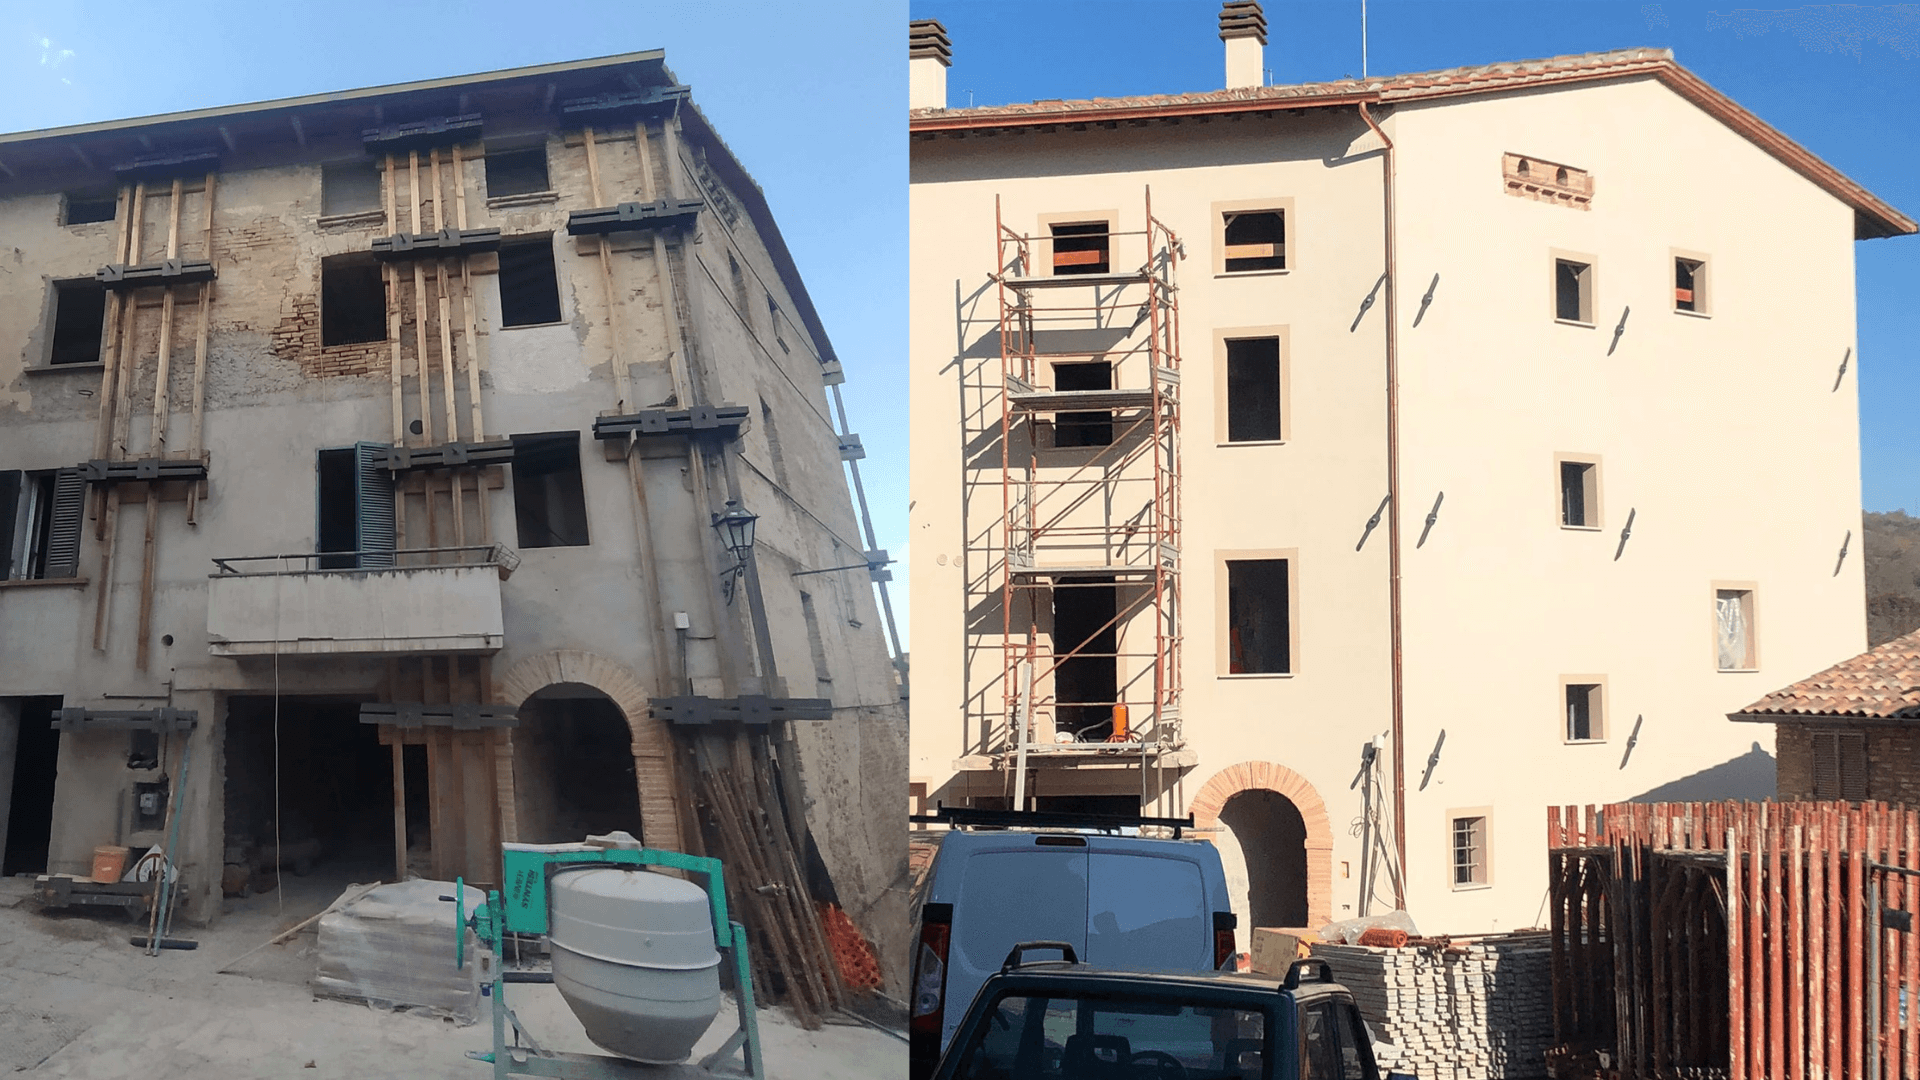 Ristrutturazione immobile borgo storico di Papiano (PG)